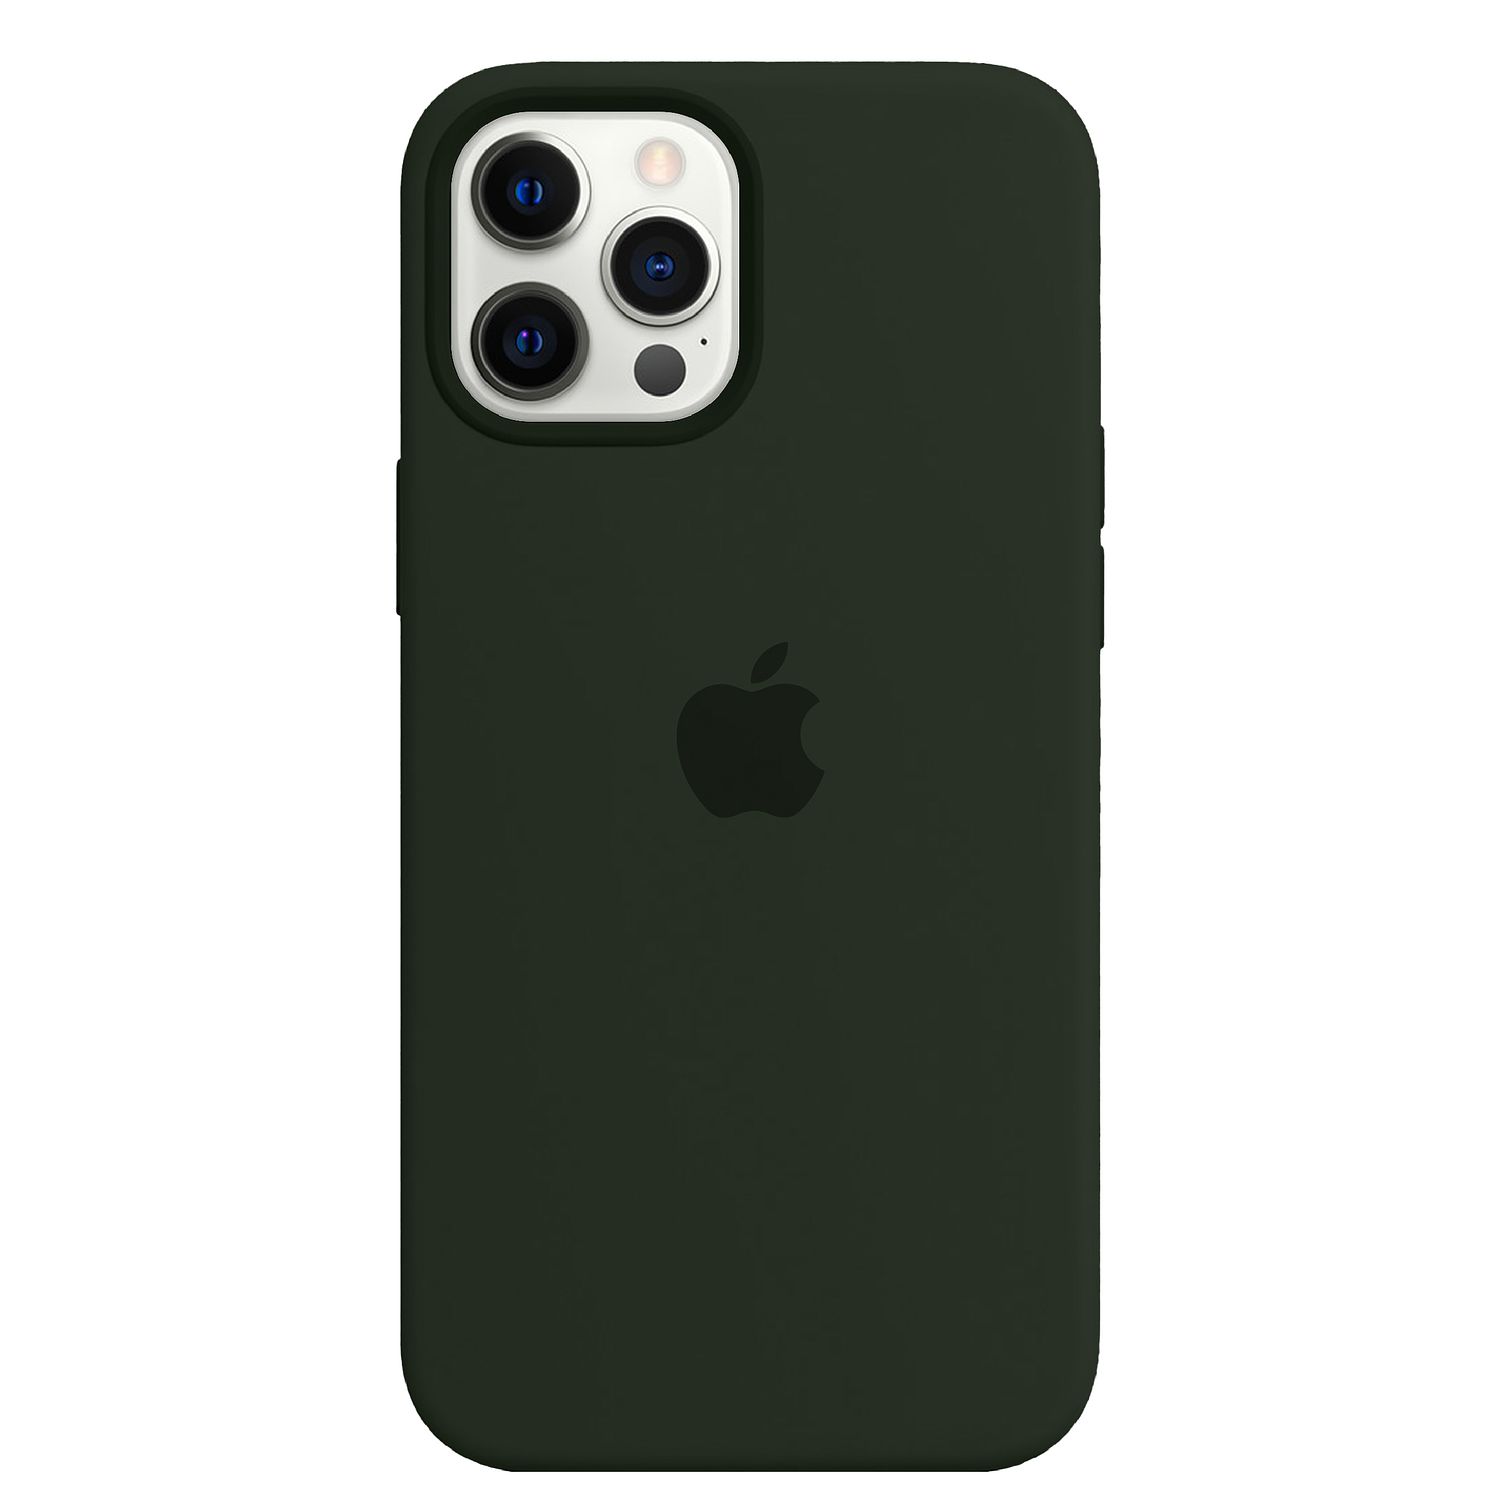 Carcasa de Silicona - iPhone 12 Pro Max 12